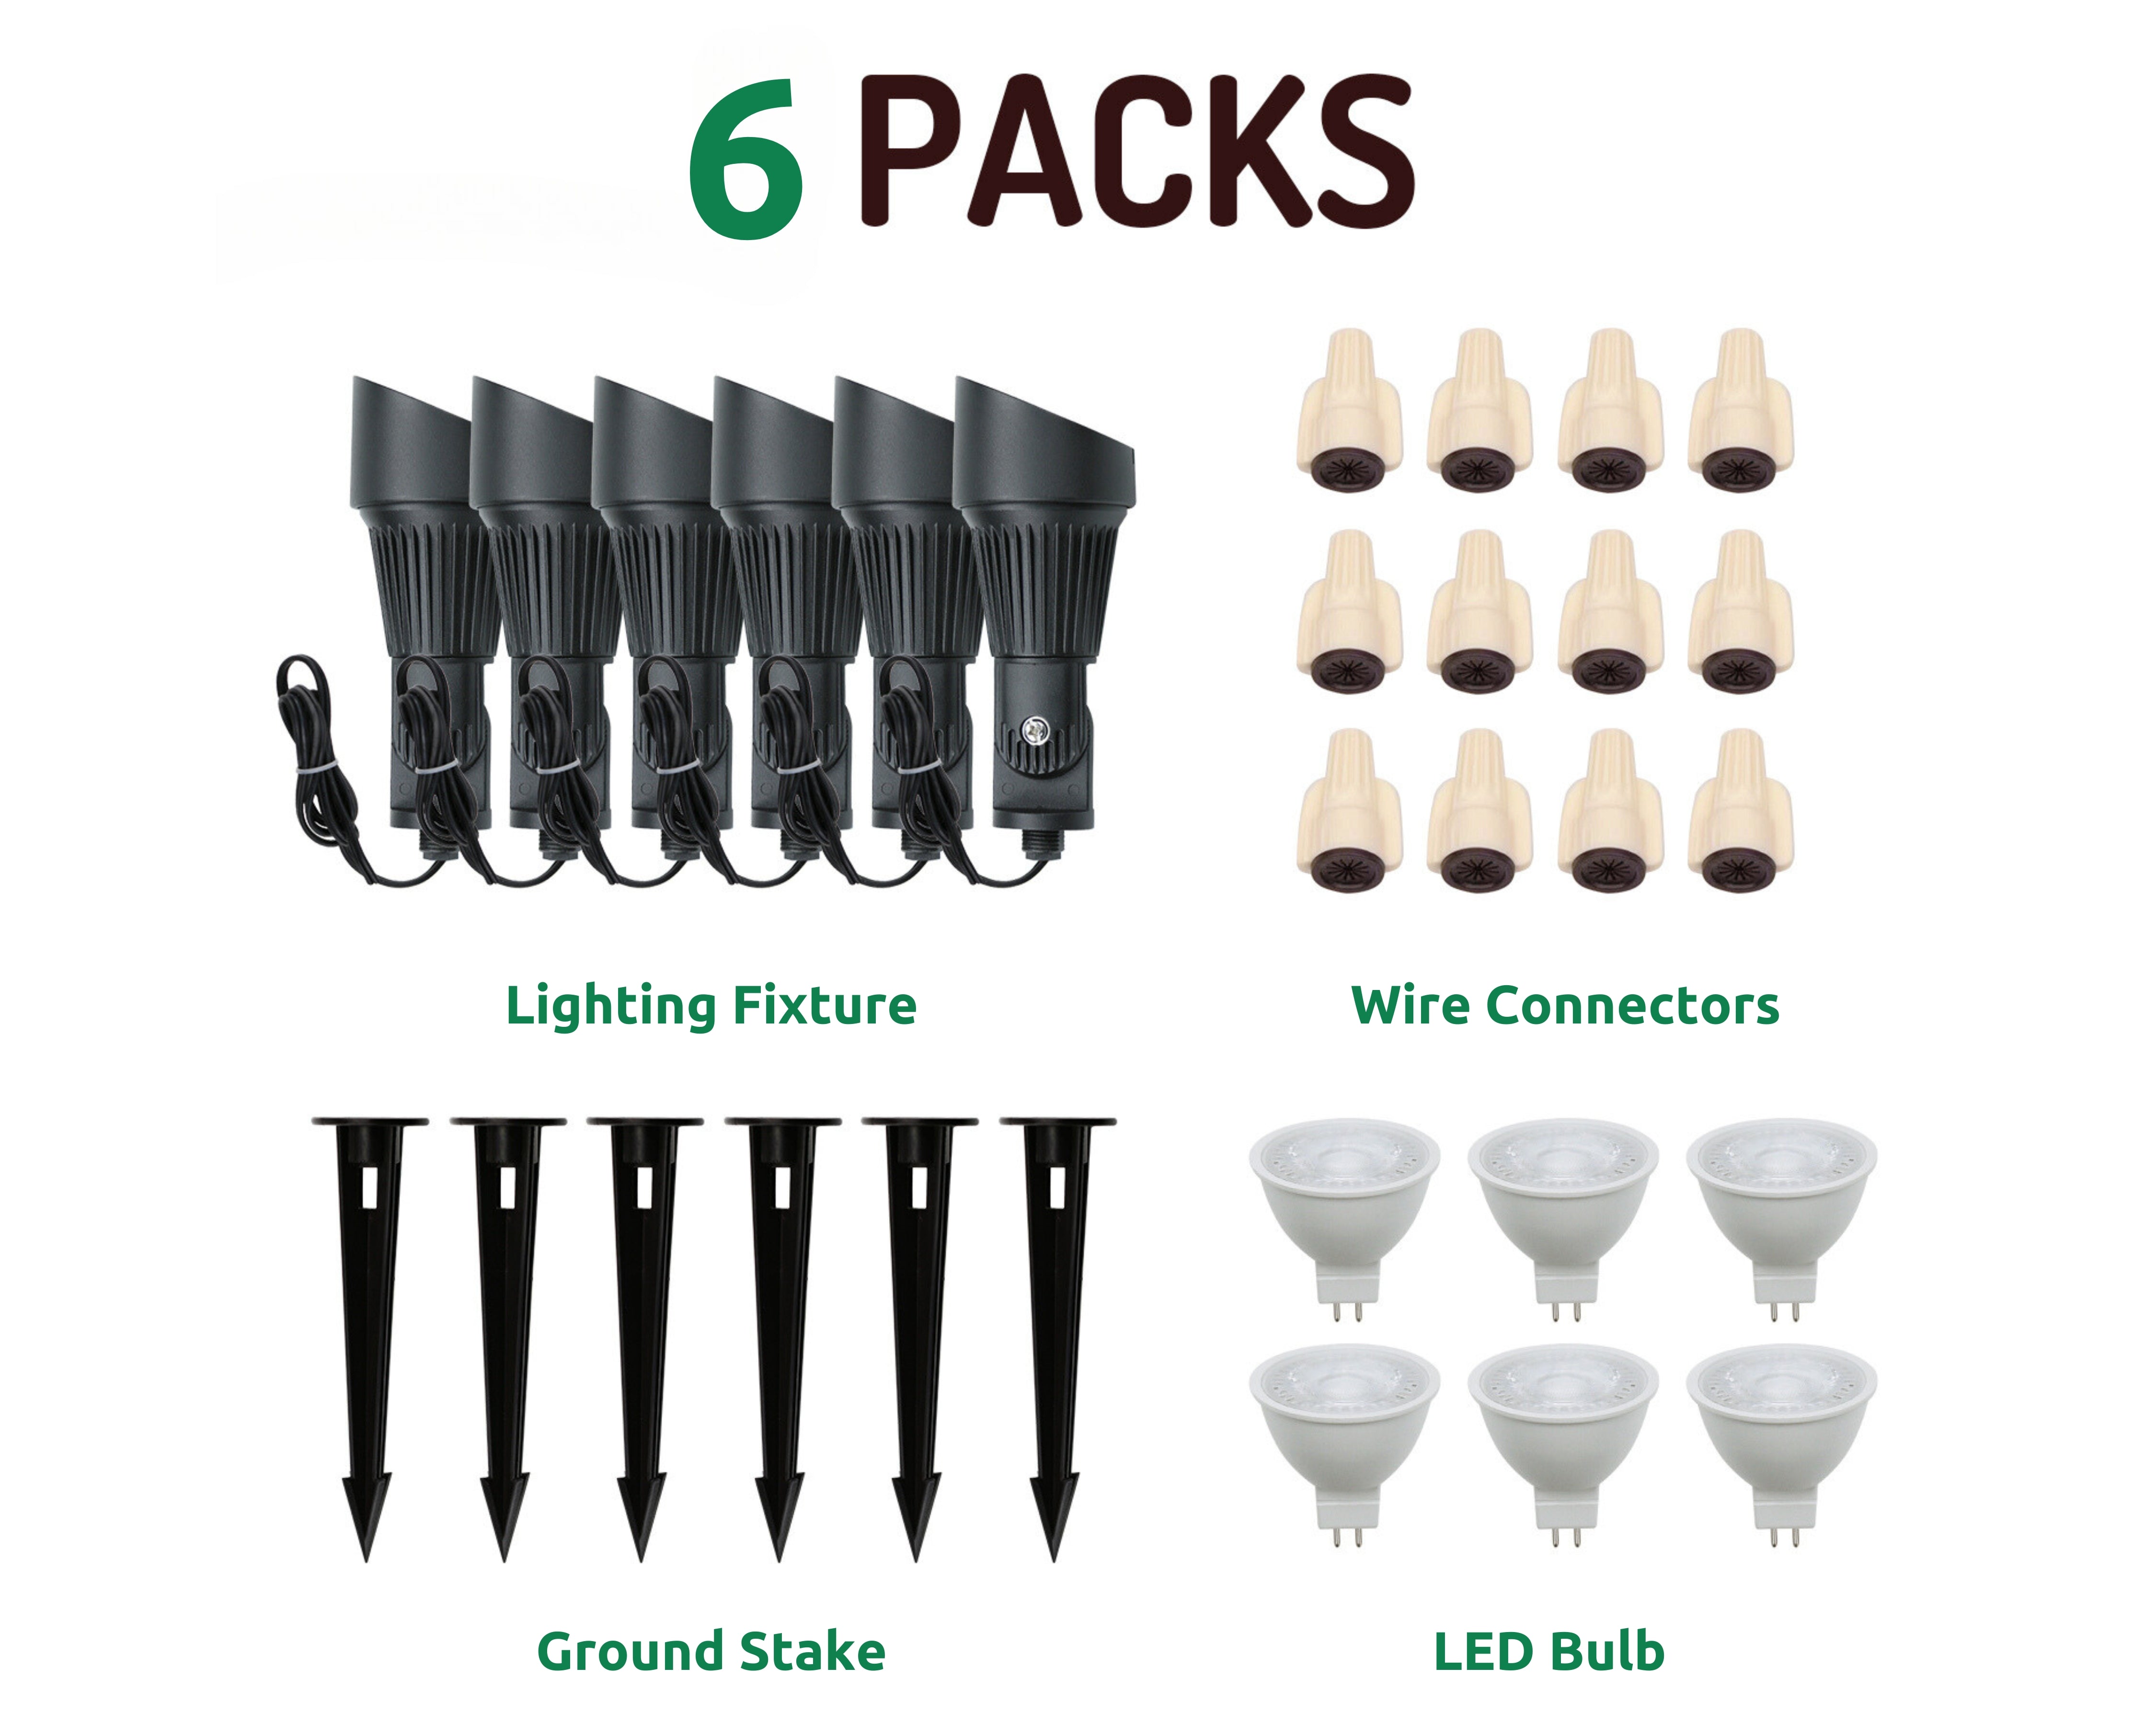 Lumina Lighting® 4W Landscape Spotlights | Low Voltage Landscape Lighting Lights - 12V 3000K | Replaceable MR16 LED Bulb (Black, 6-Pack)